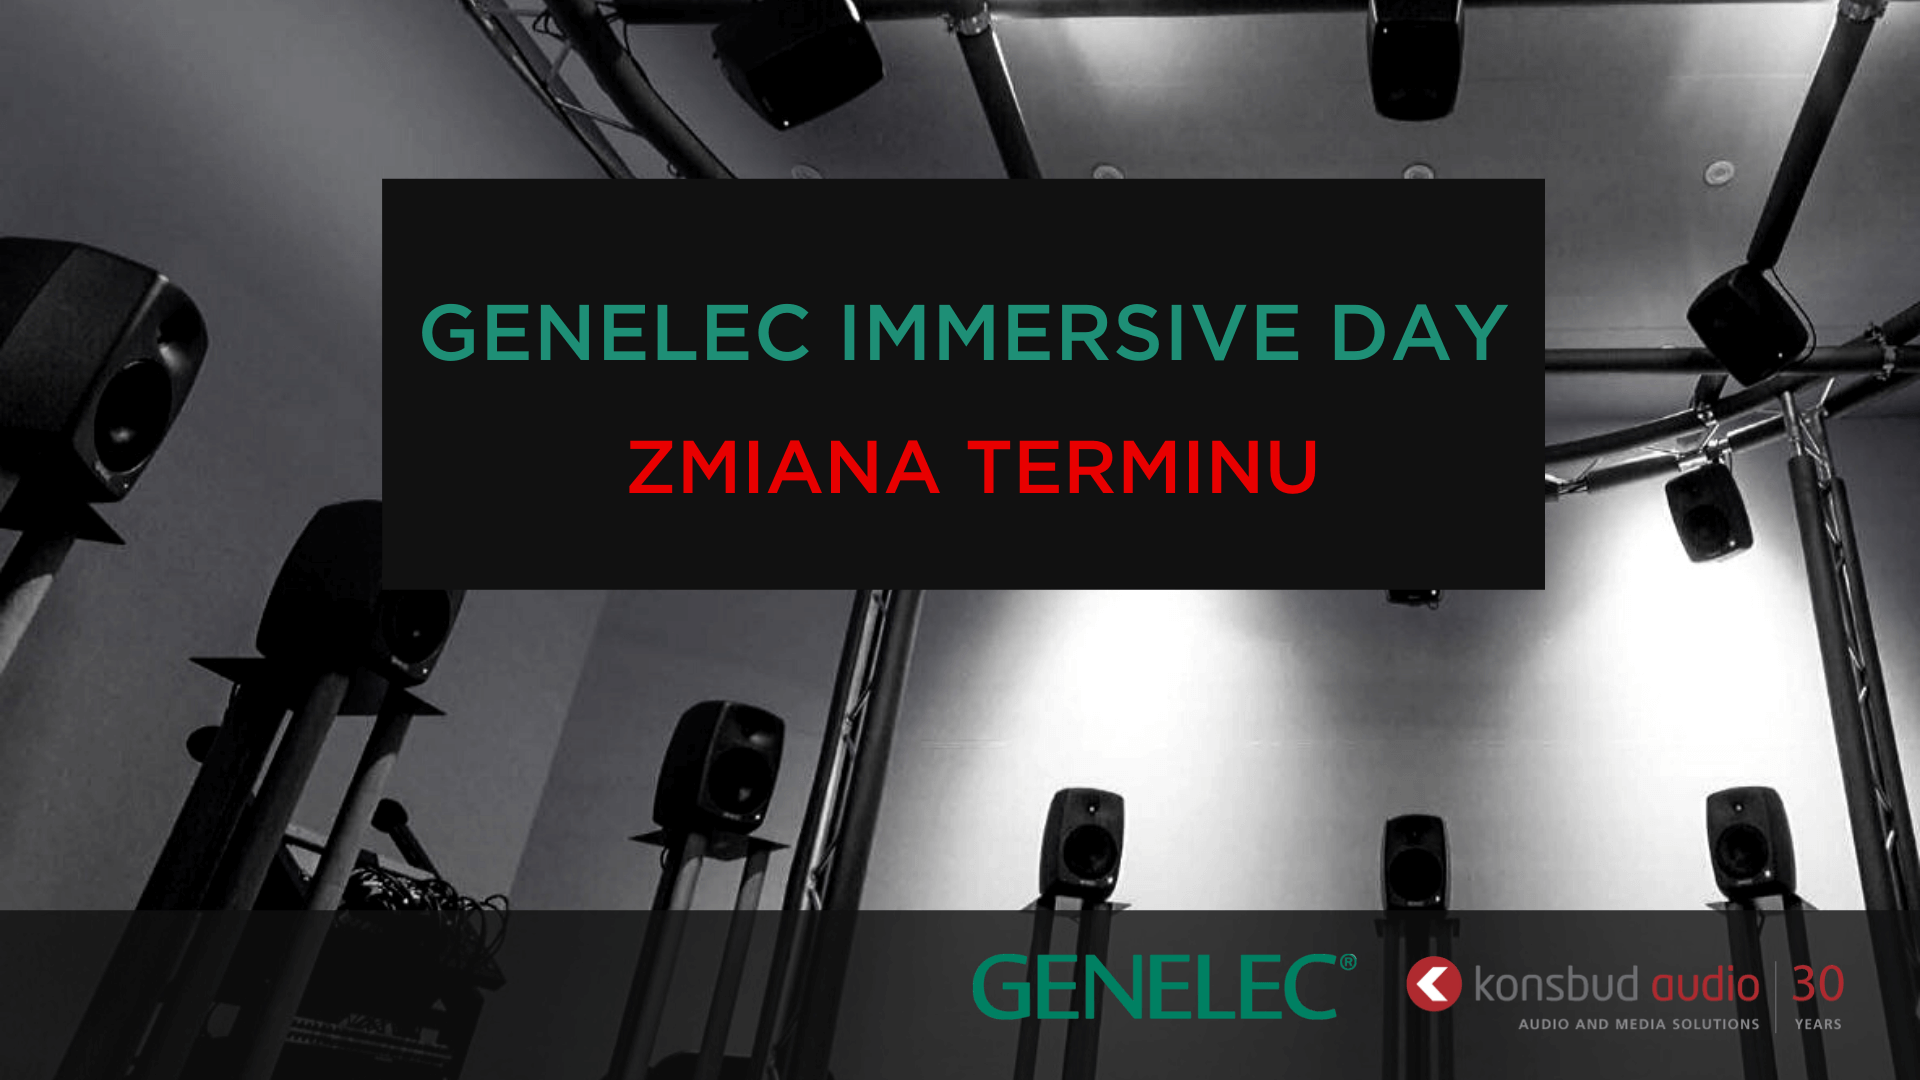 Zmiana terminu Genelec Immersive Day